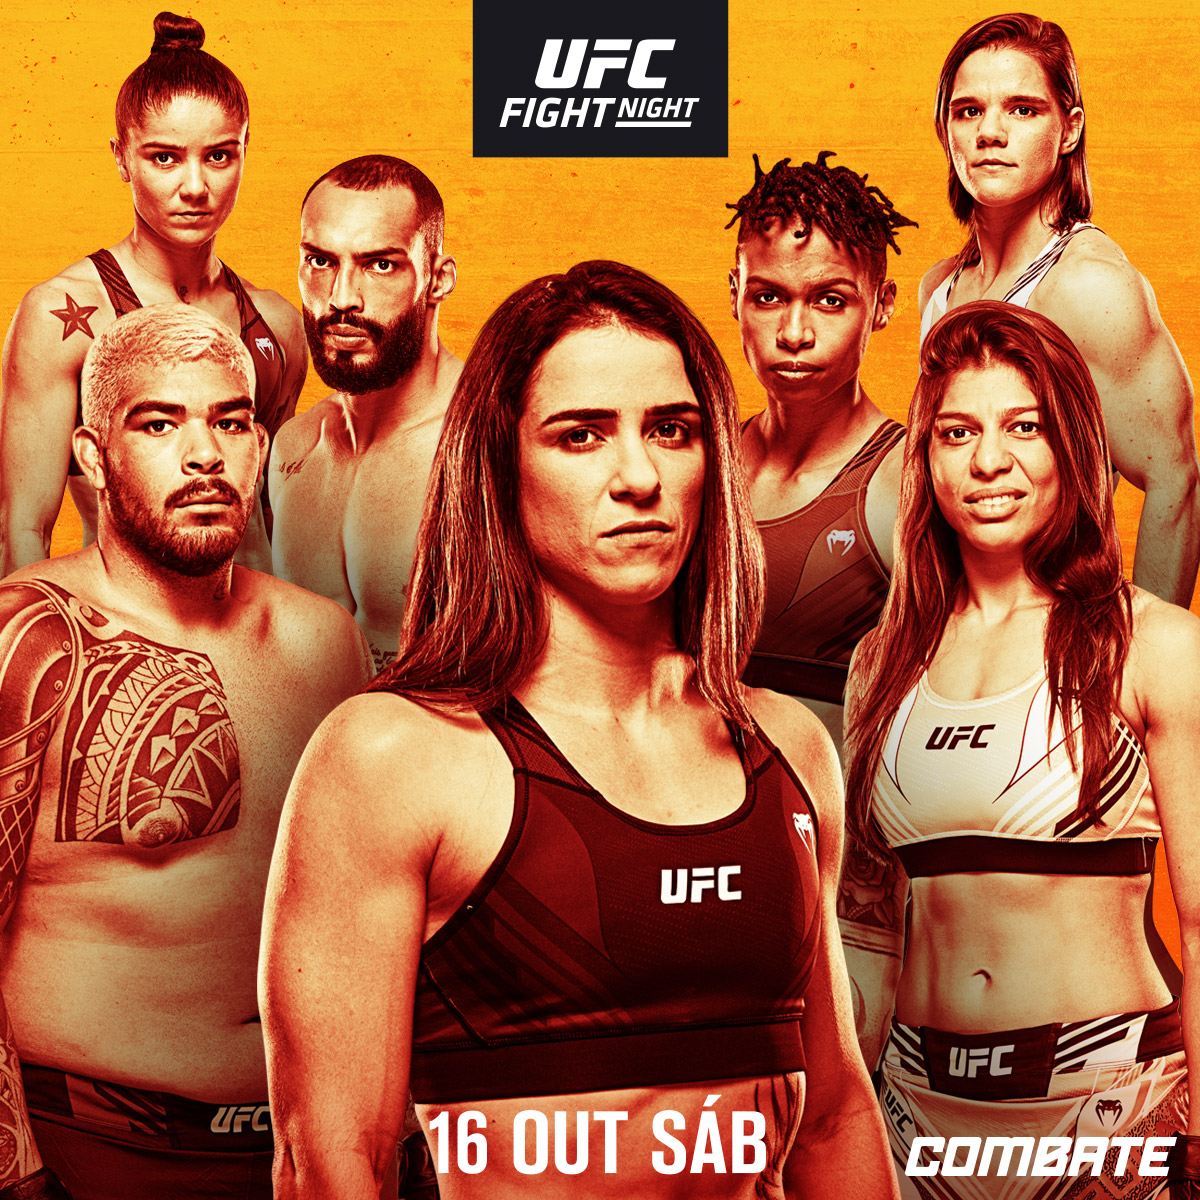 UFC on ESPN+ 53 - Las Vegas - Poster et affiche